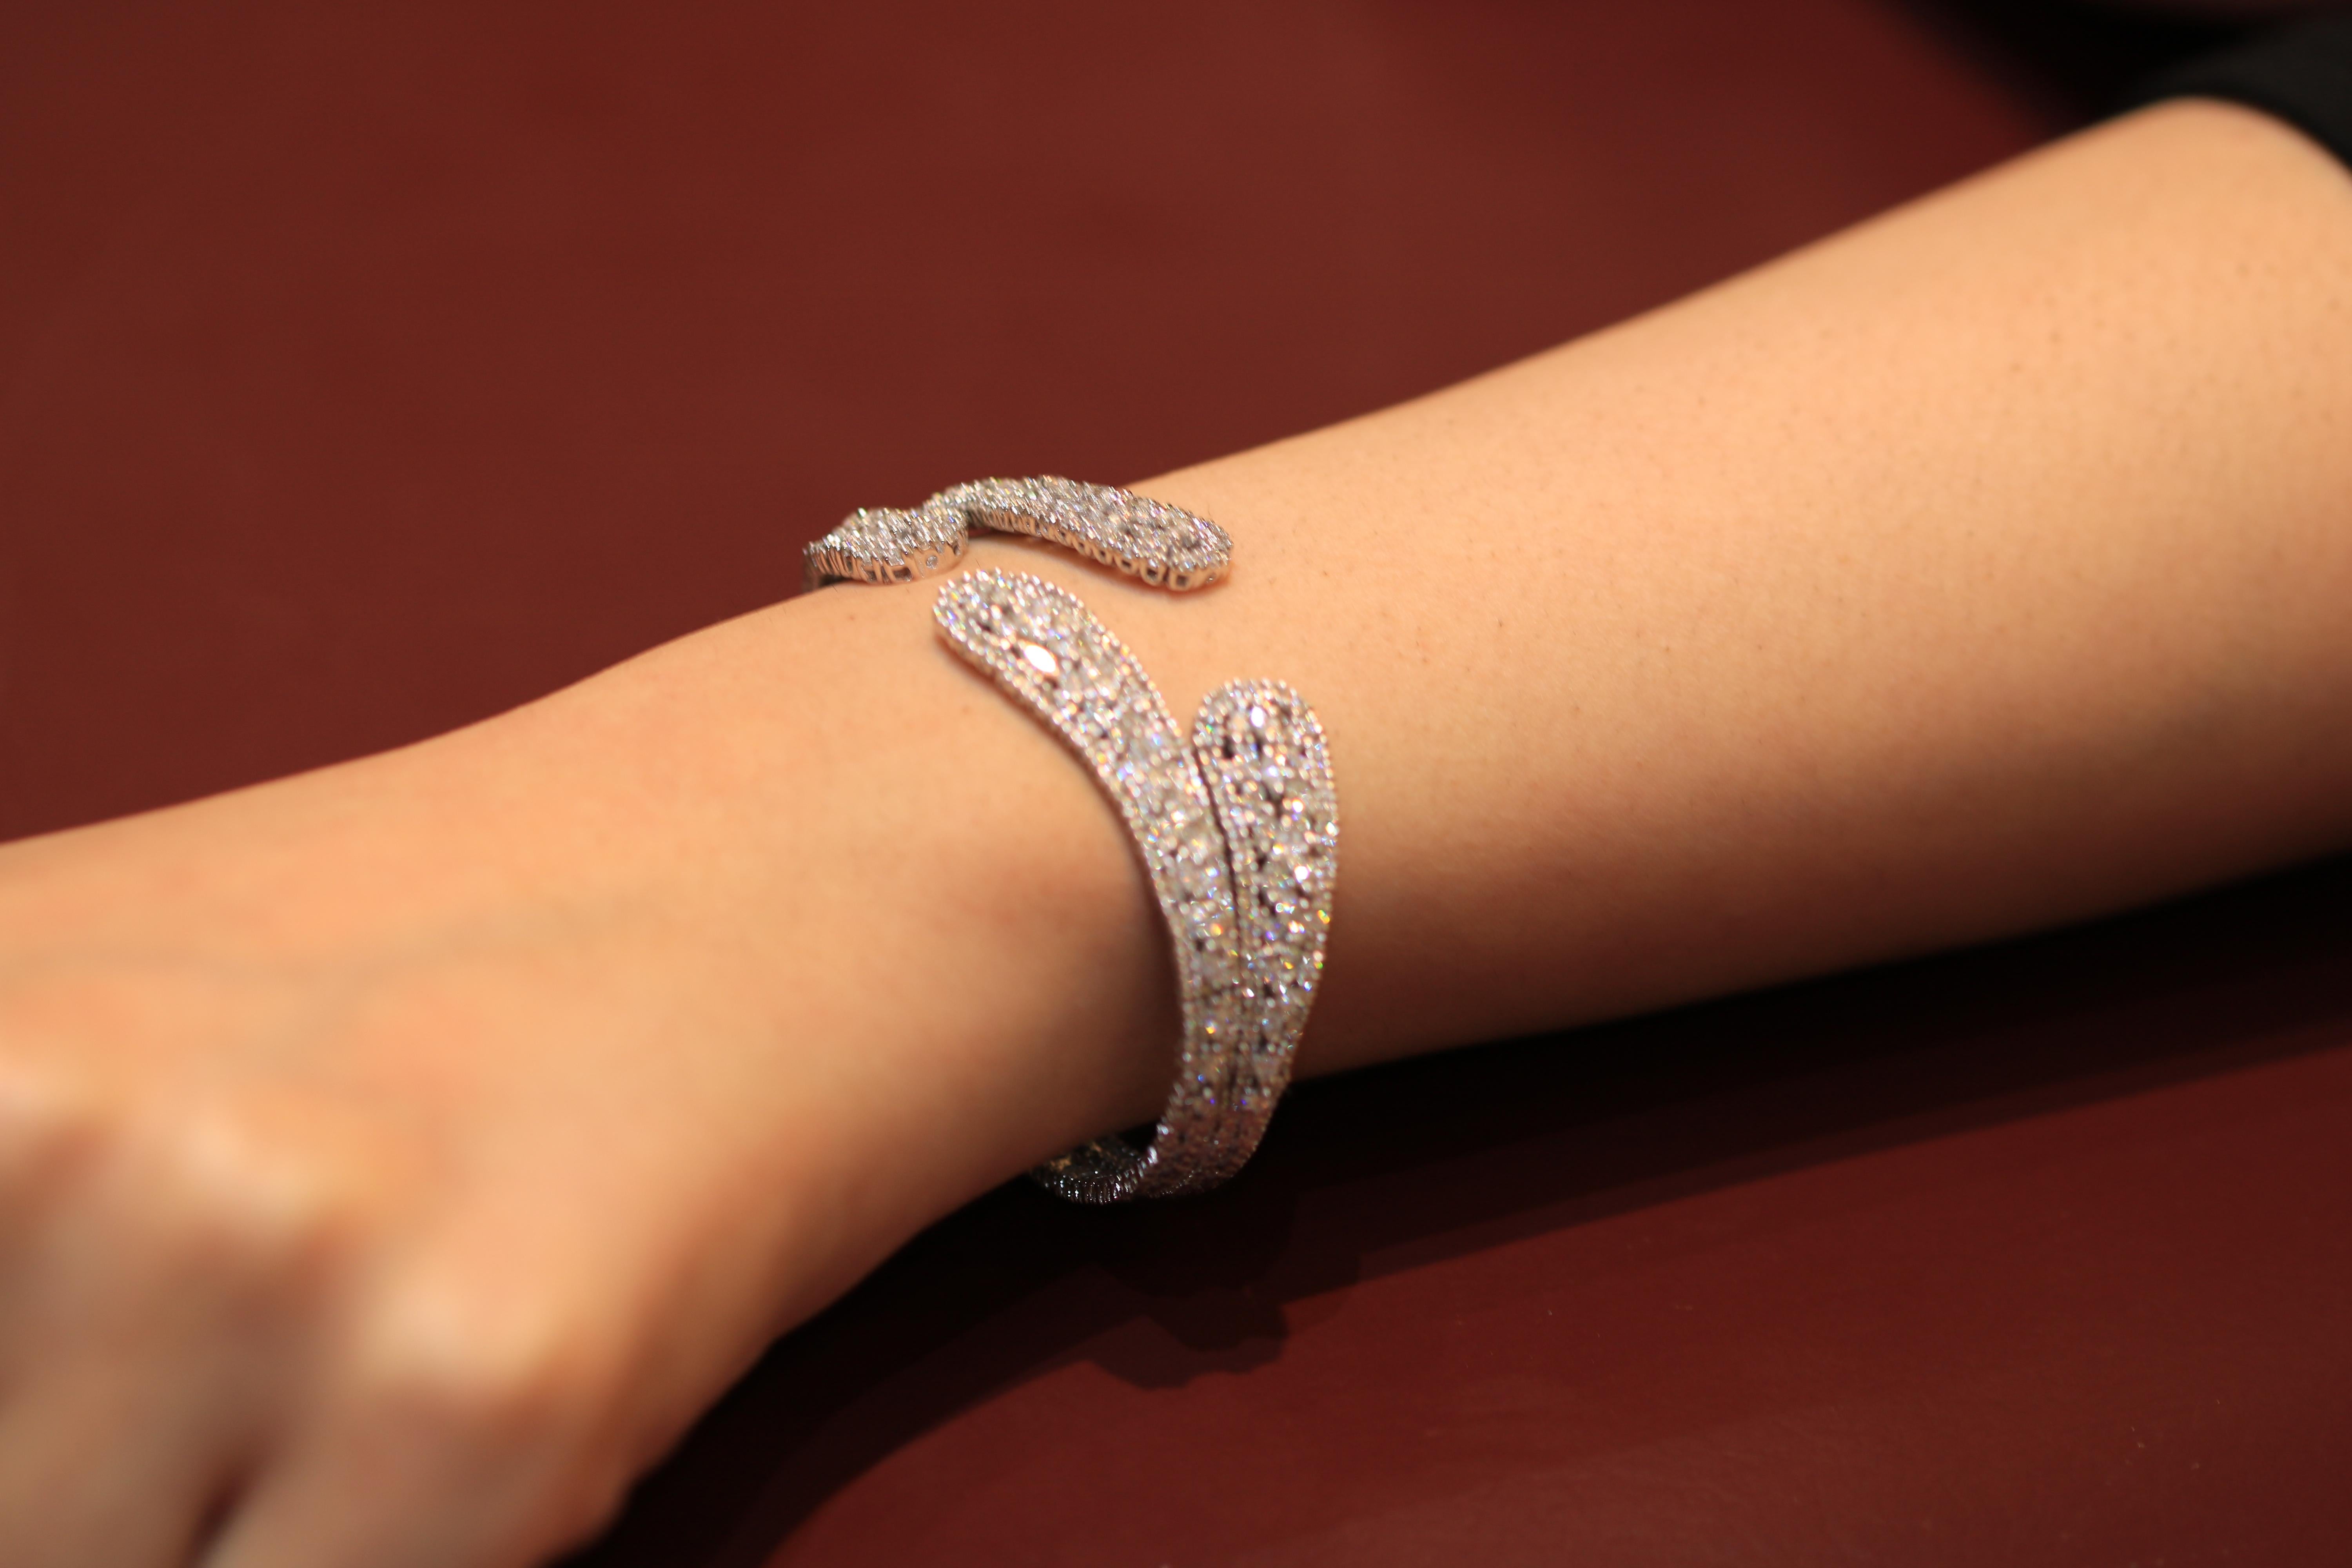 Schlichtes und klassisches Armband von Amwaj Schmuck, vollständig mit Diamanten in Marquise- und runder Form besetzt, die einen zarten Hauch für einen glamourösen und femininen Look der Dame geben, die dieses ewige Kunstwerk wählt. Klassisch und